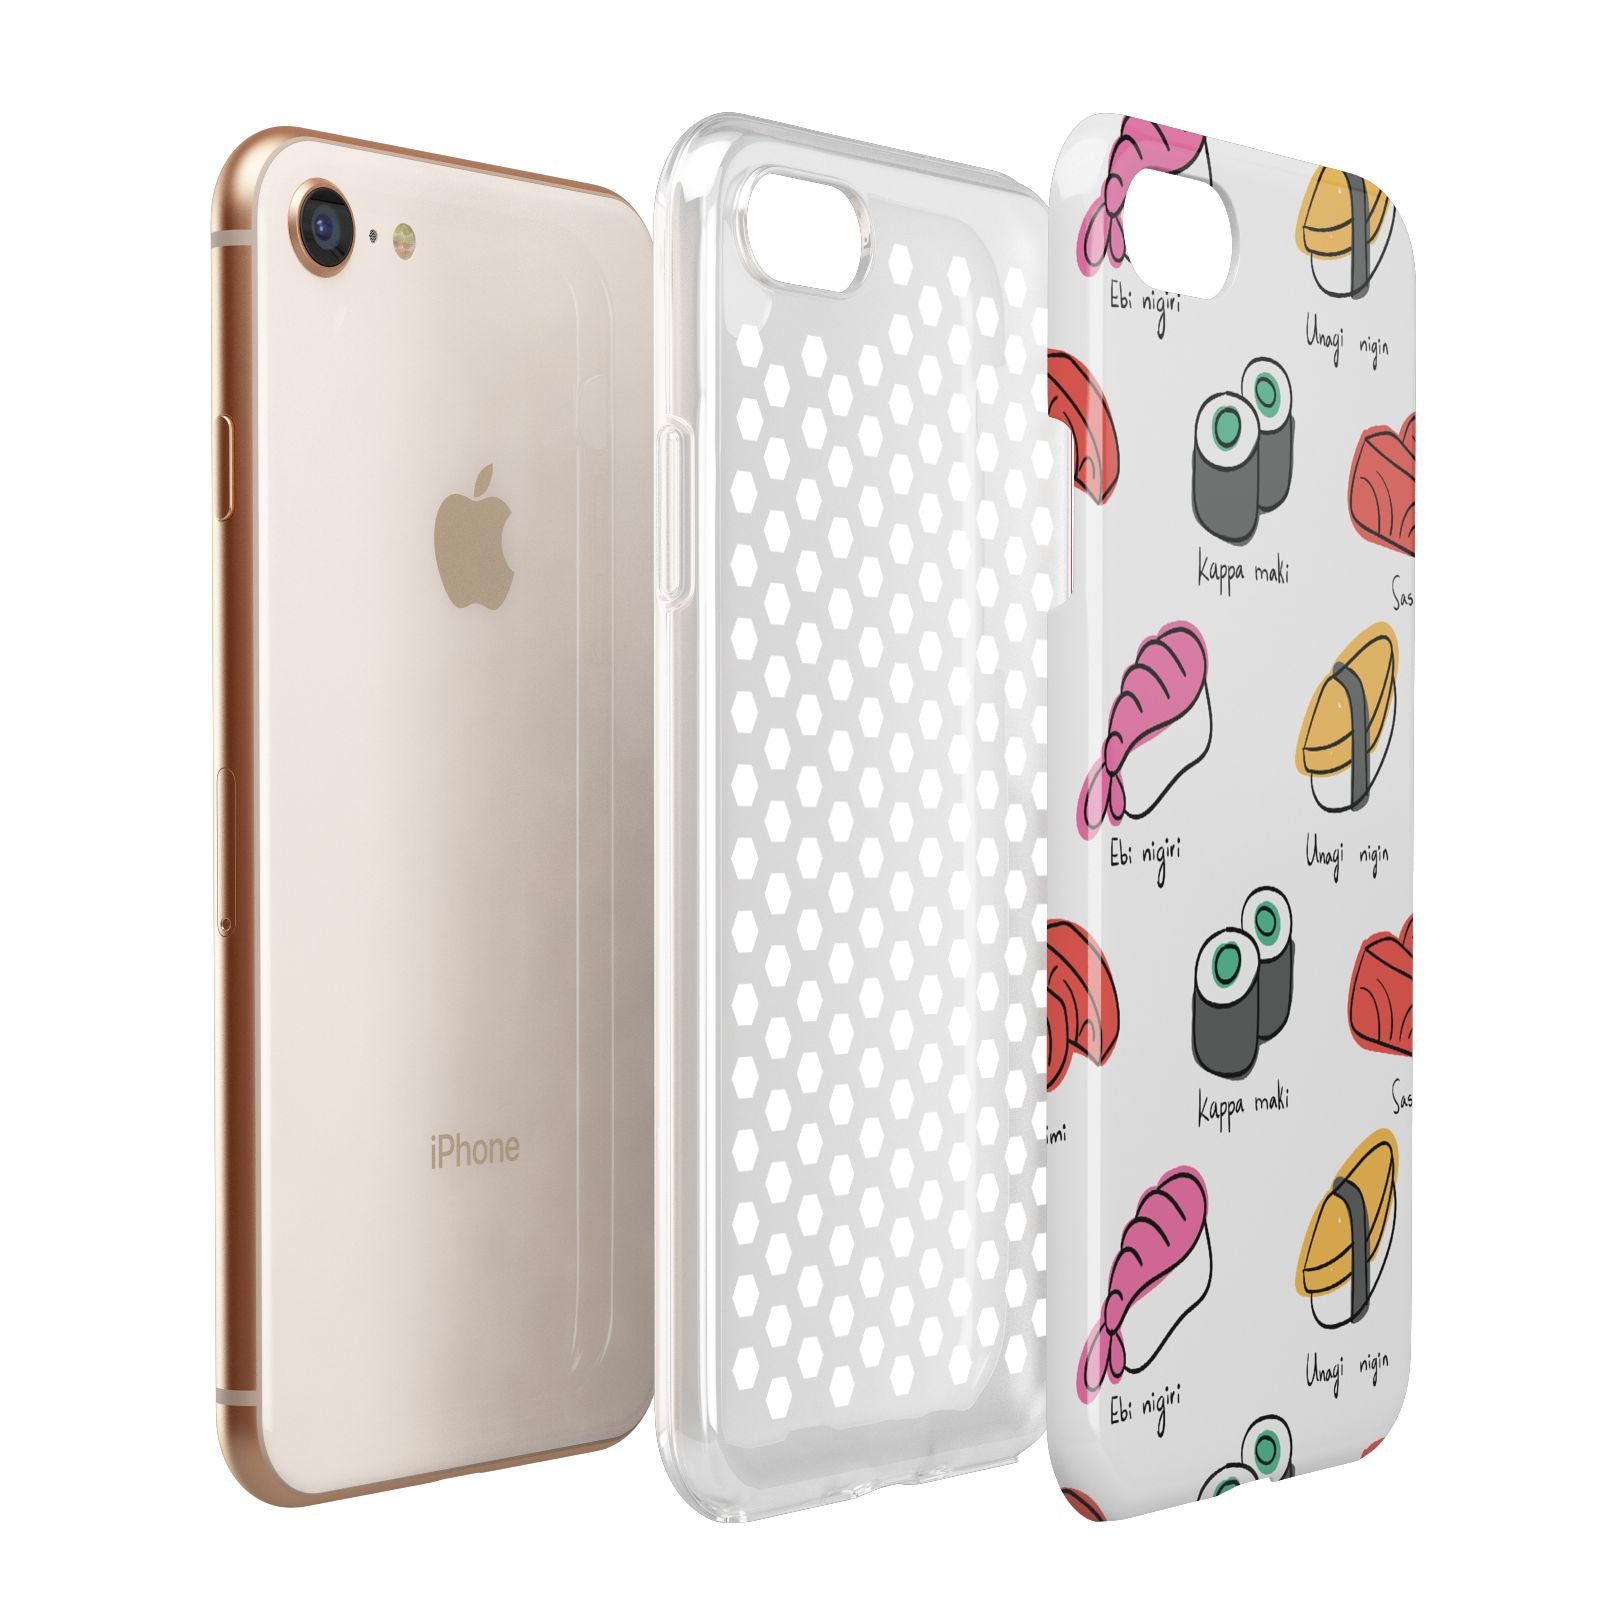 Sashimi Kappa Maki Sushi Apple iPhone 7 8 3D Tough Case Expanded View